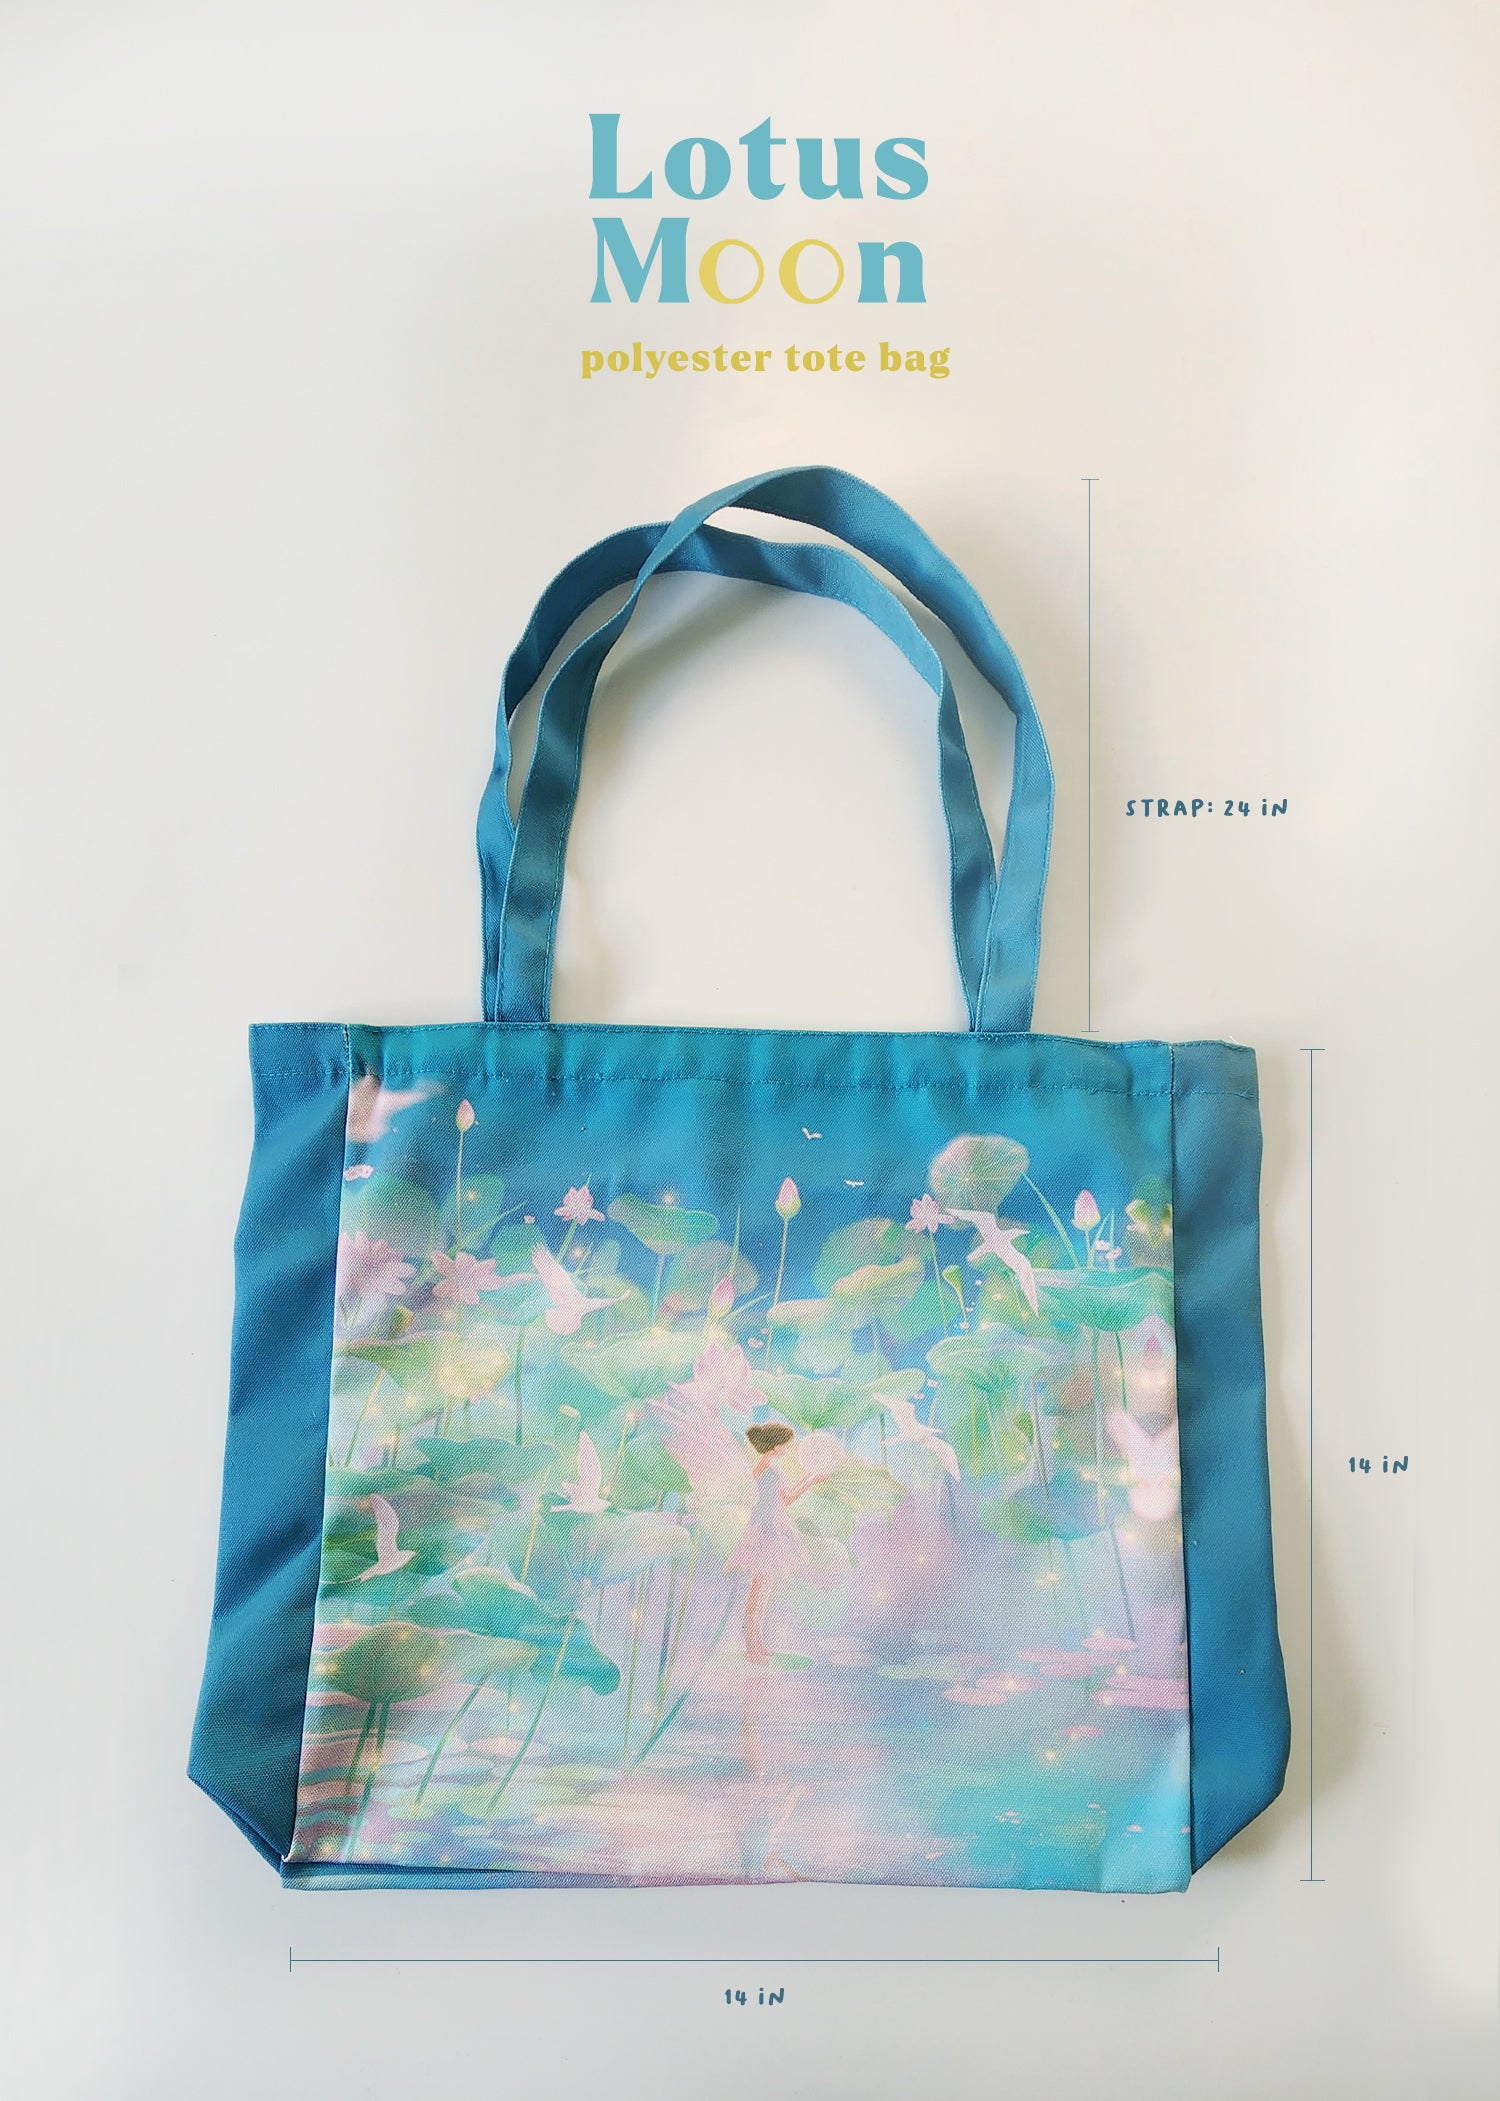 RPET 100% polyester stitchbond nonwoven fabric bag - China Huizhou  Jinhaocheng